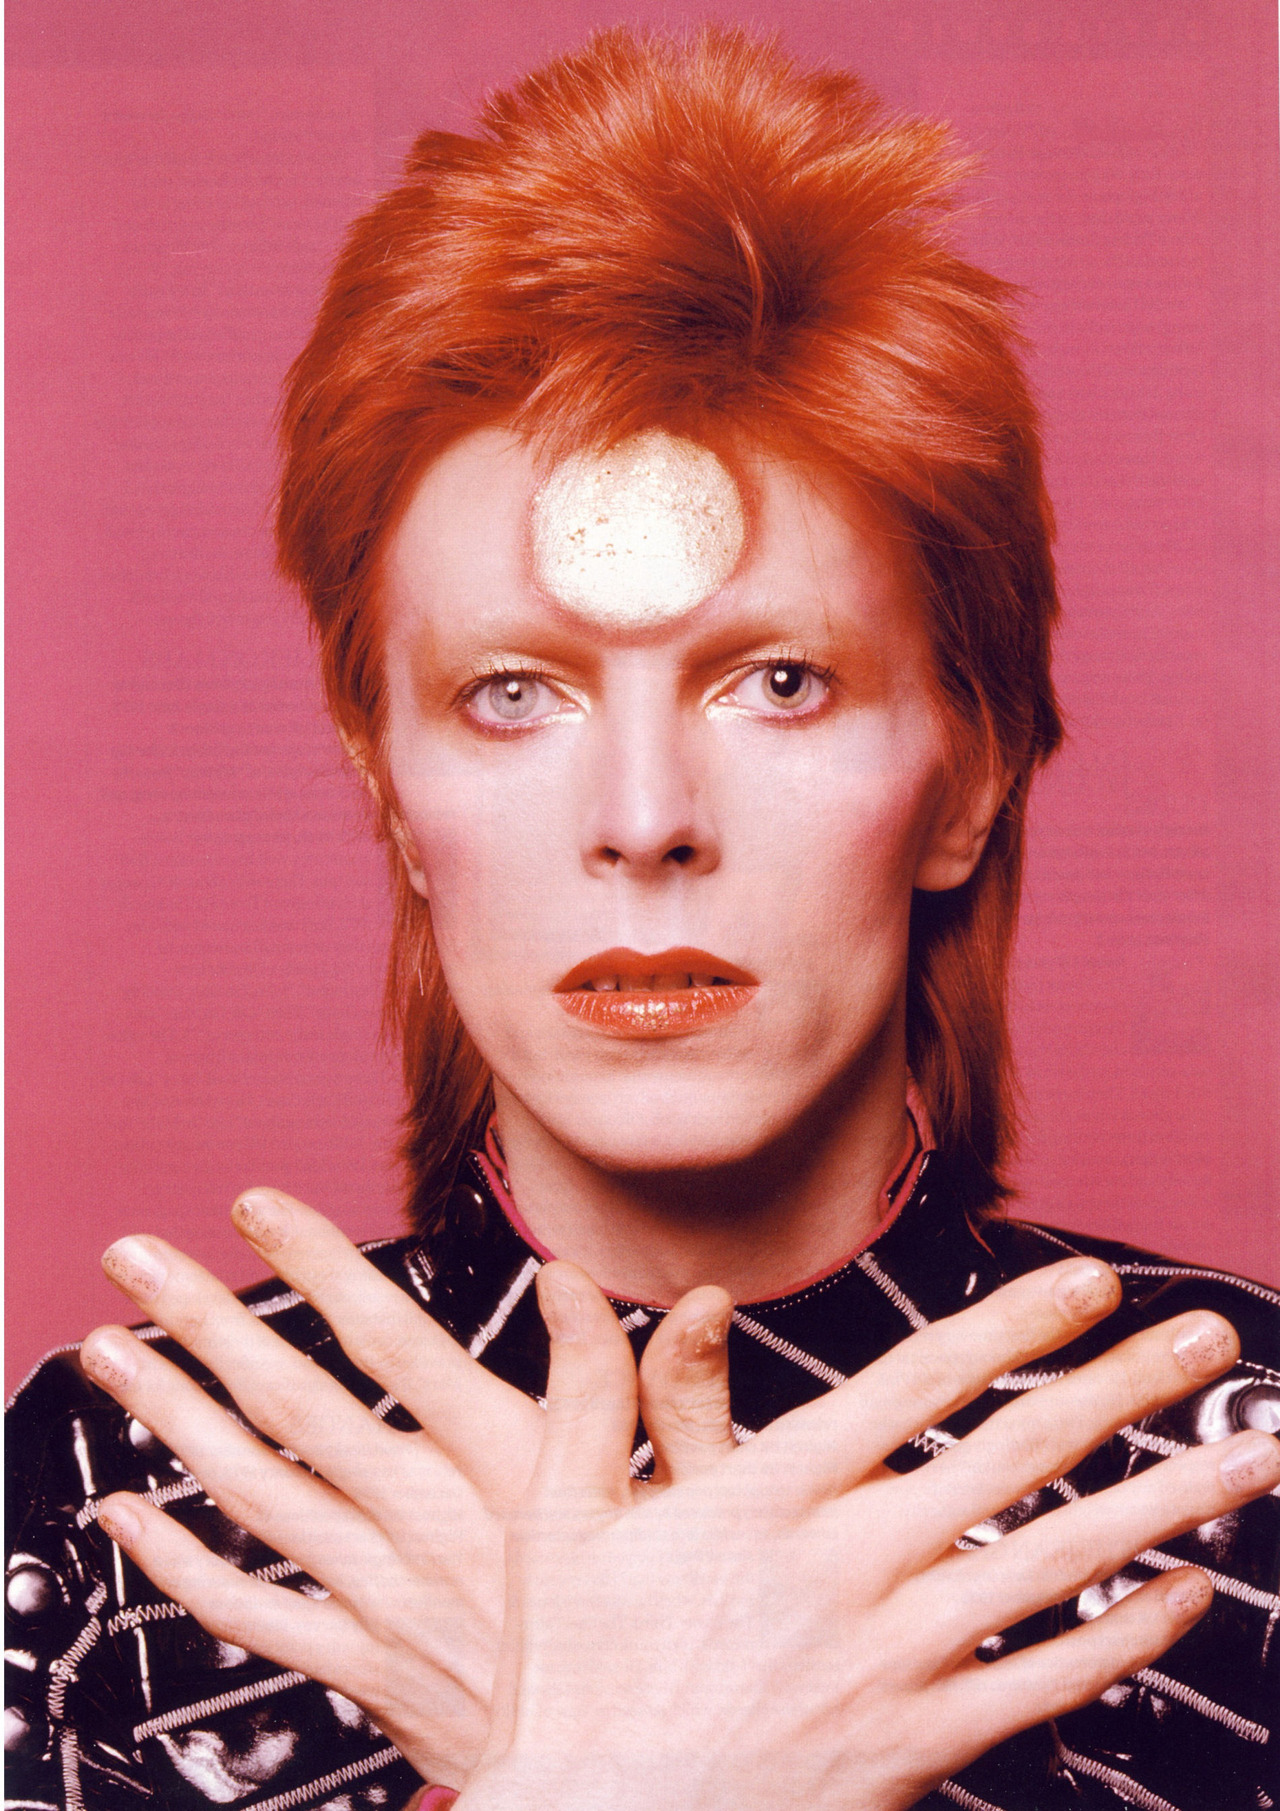 Os olhos de cores diferentes de David Bowie, como Ziggy Star Dust